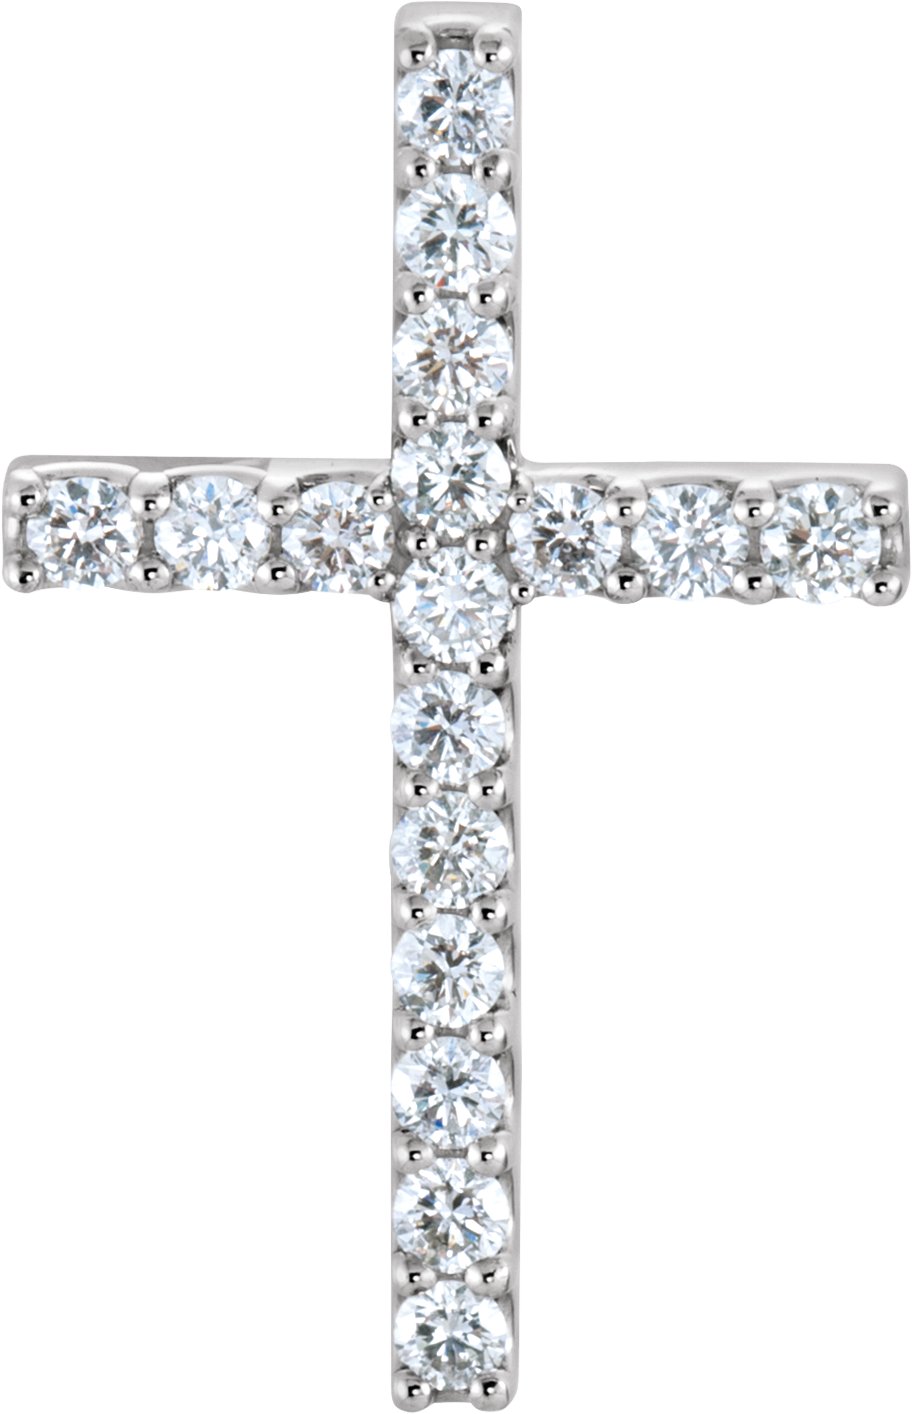 Petite Diamond Cross Pendant or Mounting